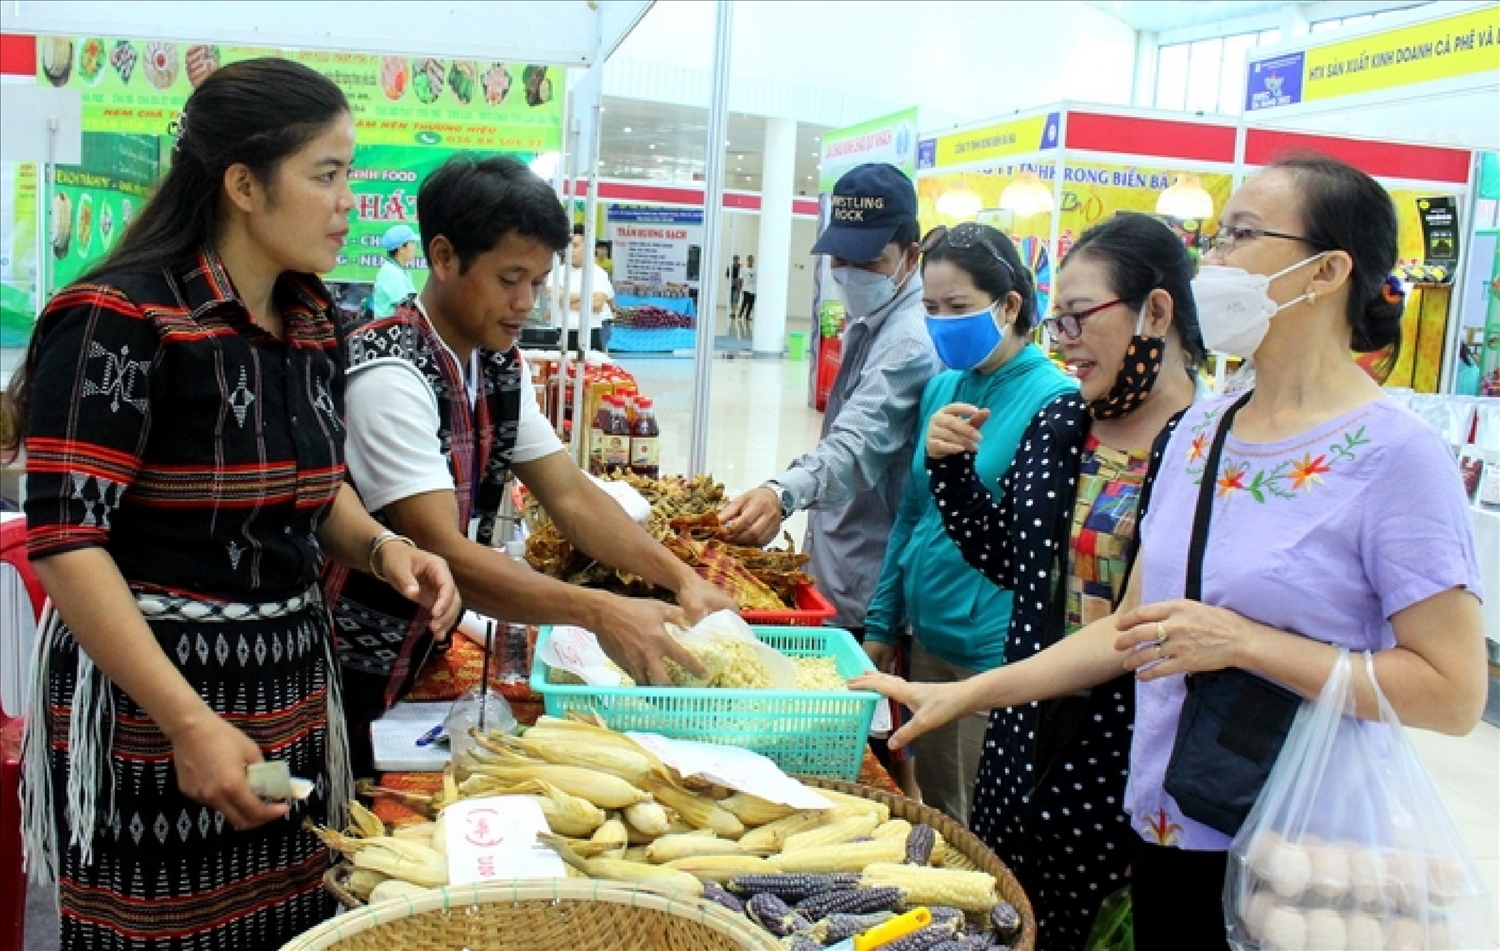 HTX Nông nghiệp sinh thái Rừng Xanh Rau Sạch tham gia Hội chợ, giới thiệu sản phẩm nôgn sản sạch cho khách hàng